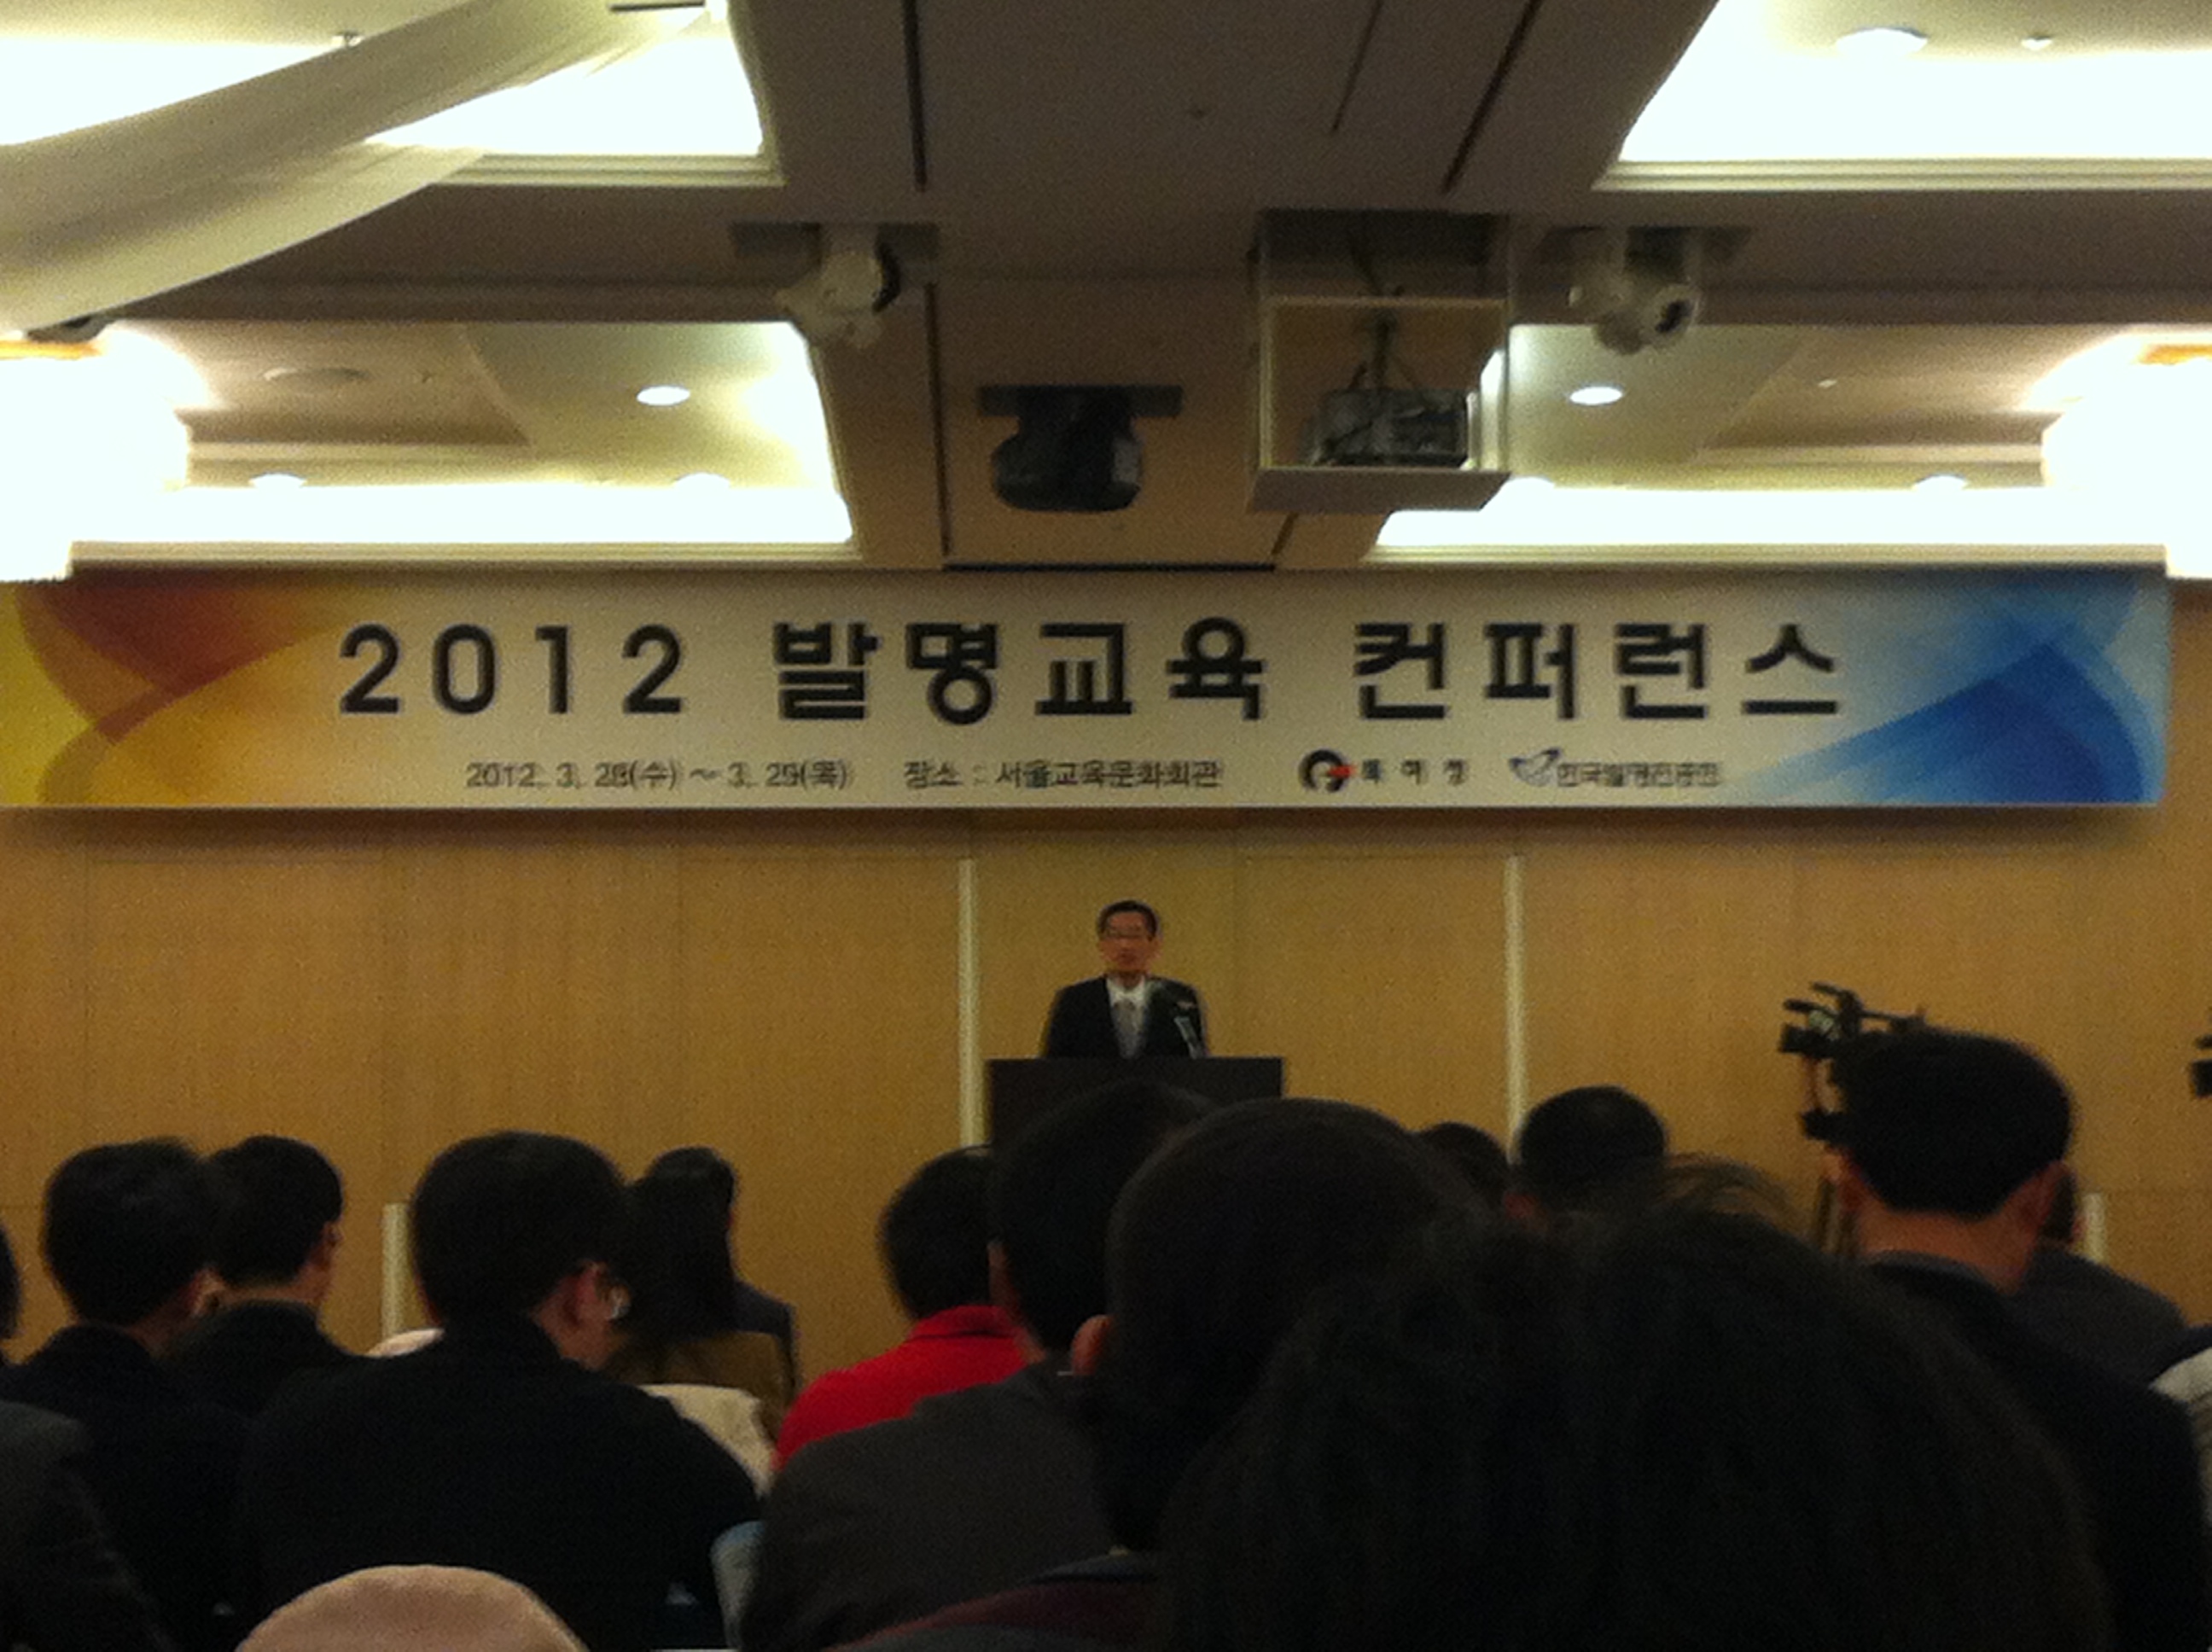 사진.JPG : 2012 발명교육 컨퍼런스 참석